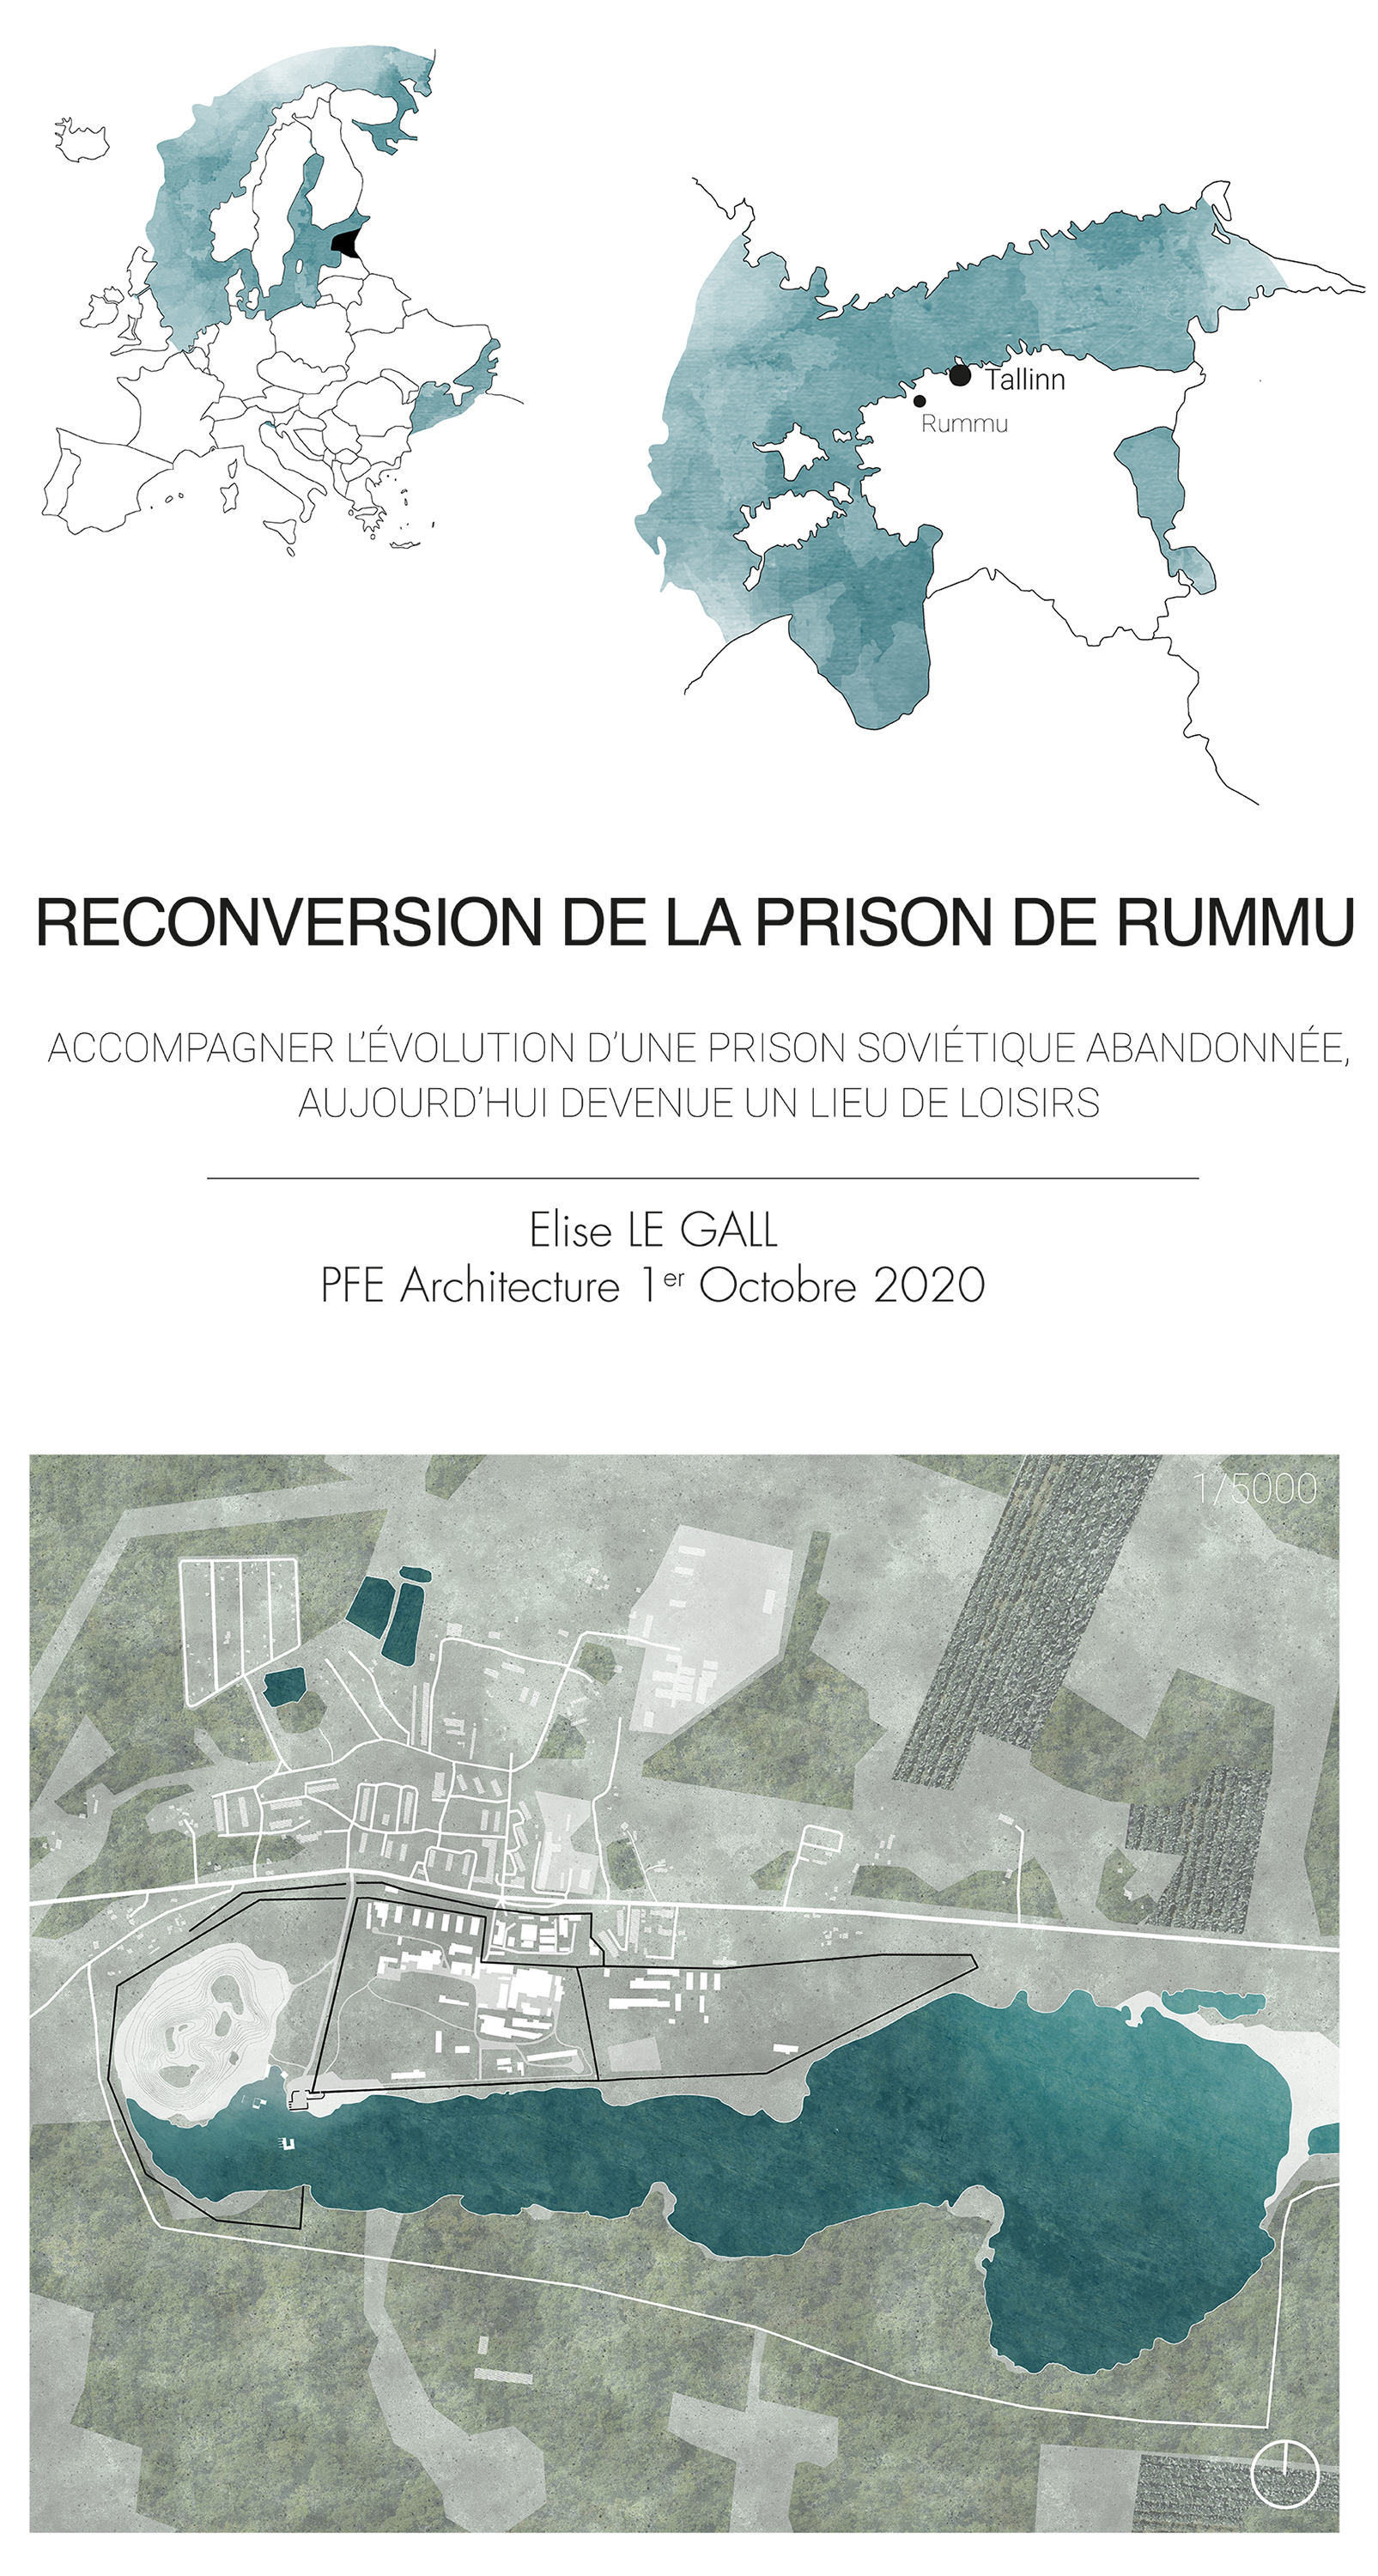 Reconversion de la prison de Rummu, en Estonie - 1